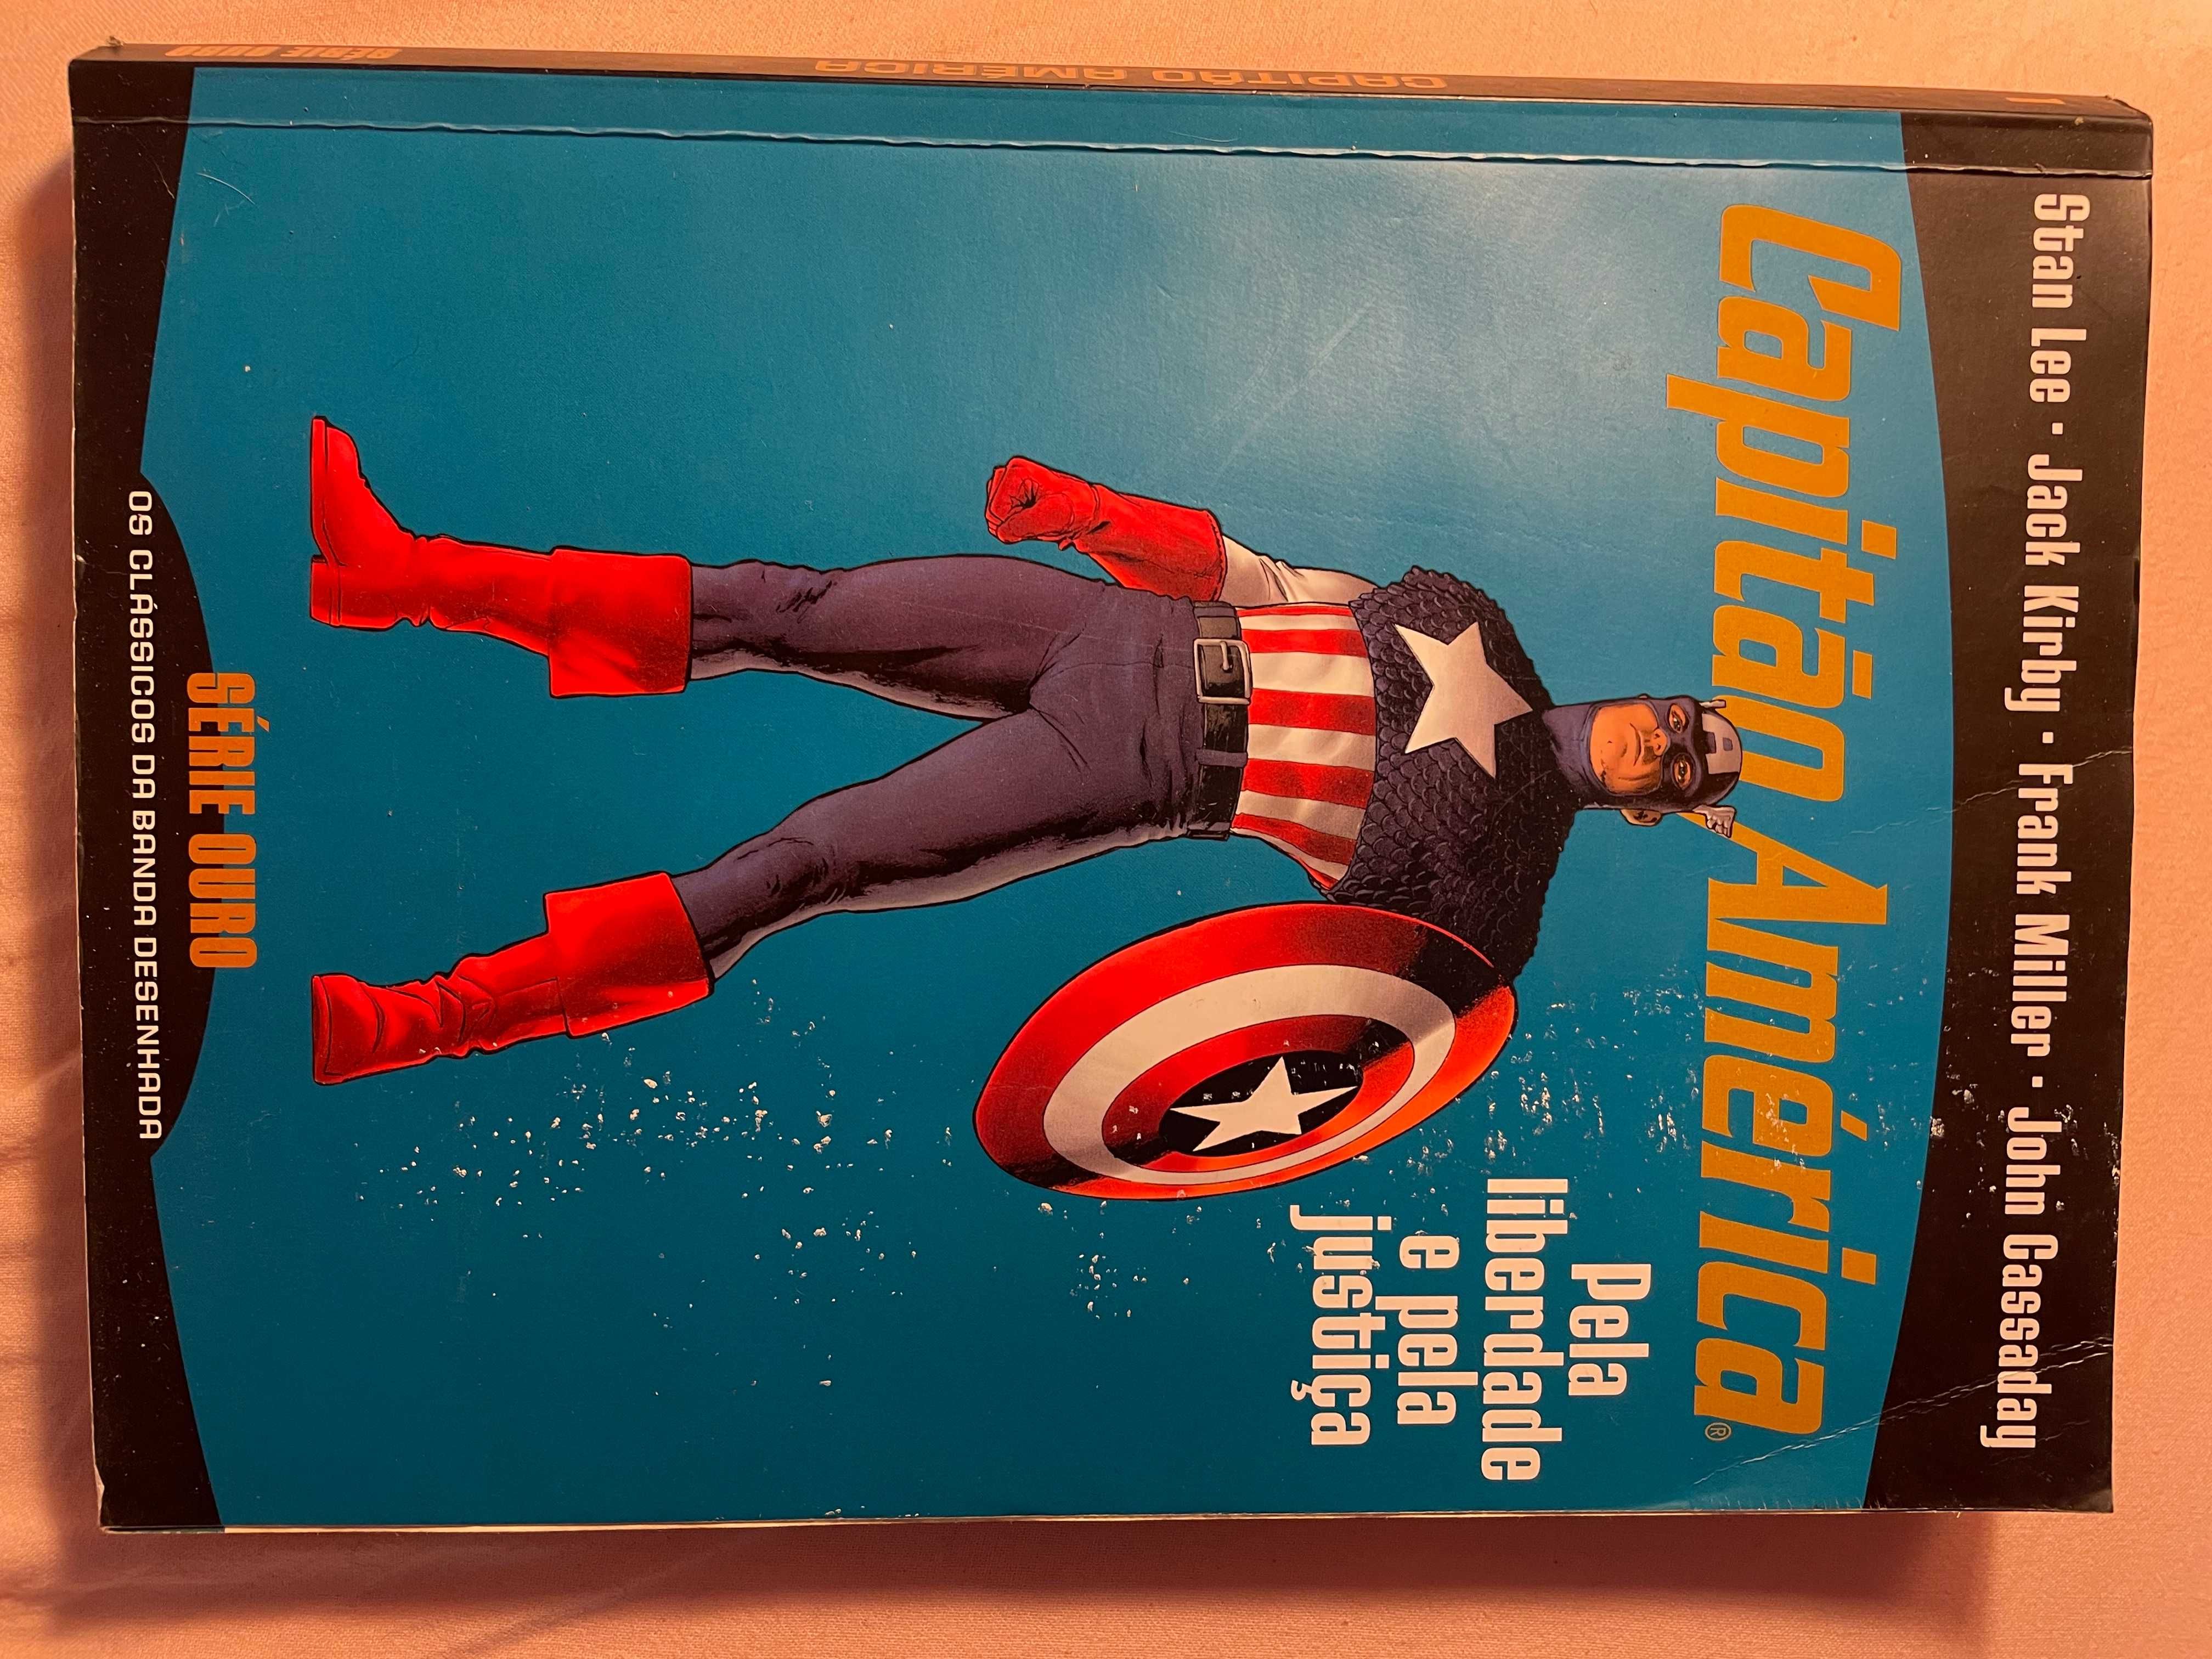 Livro "Capitão América"